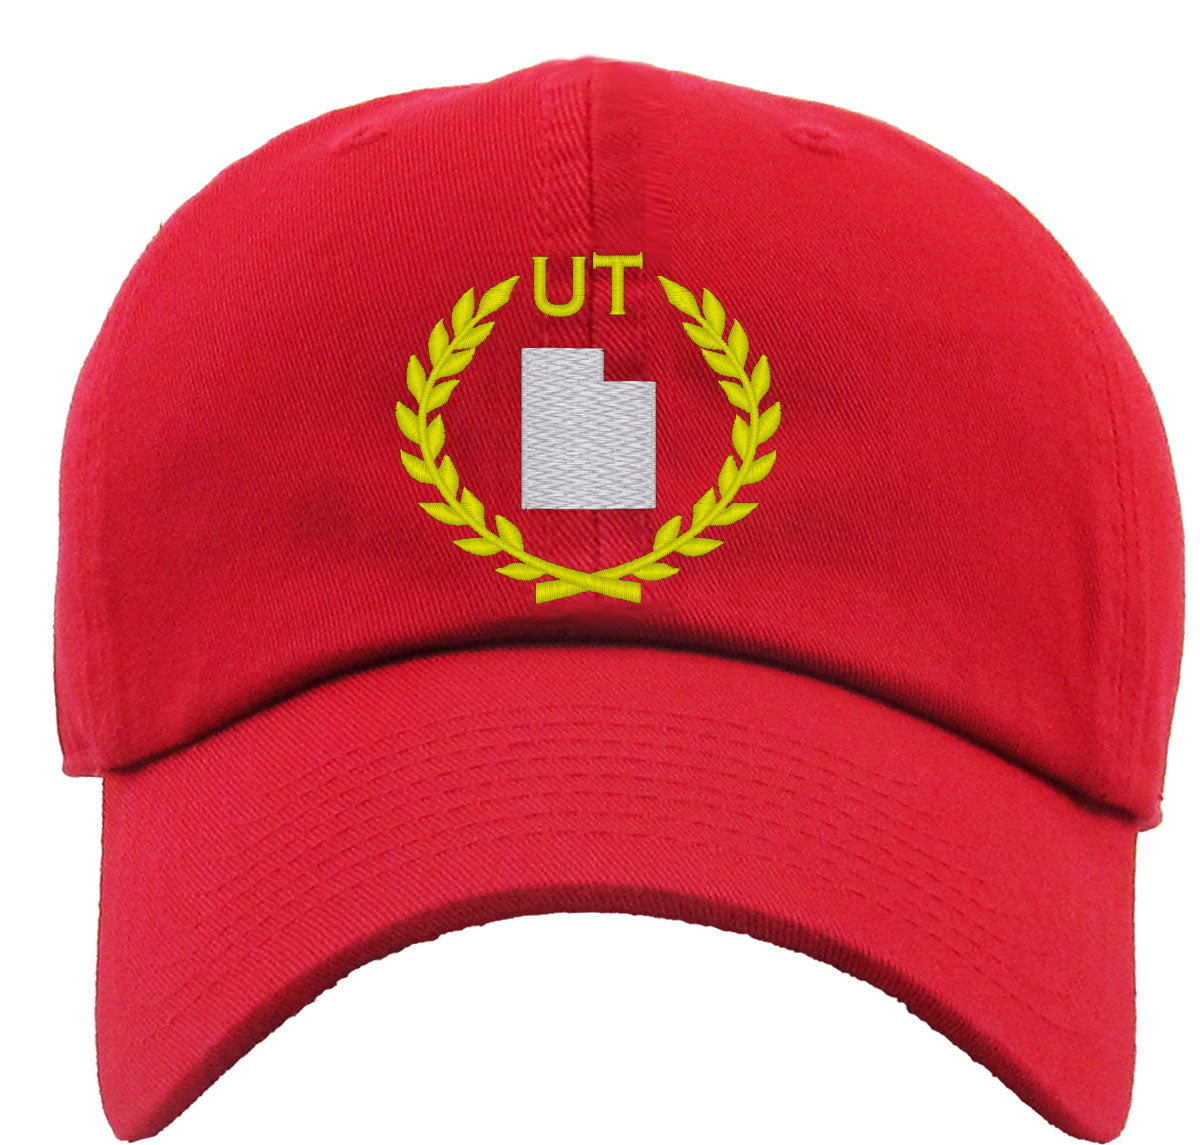 Utah State Premium Baseball Cap